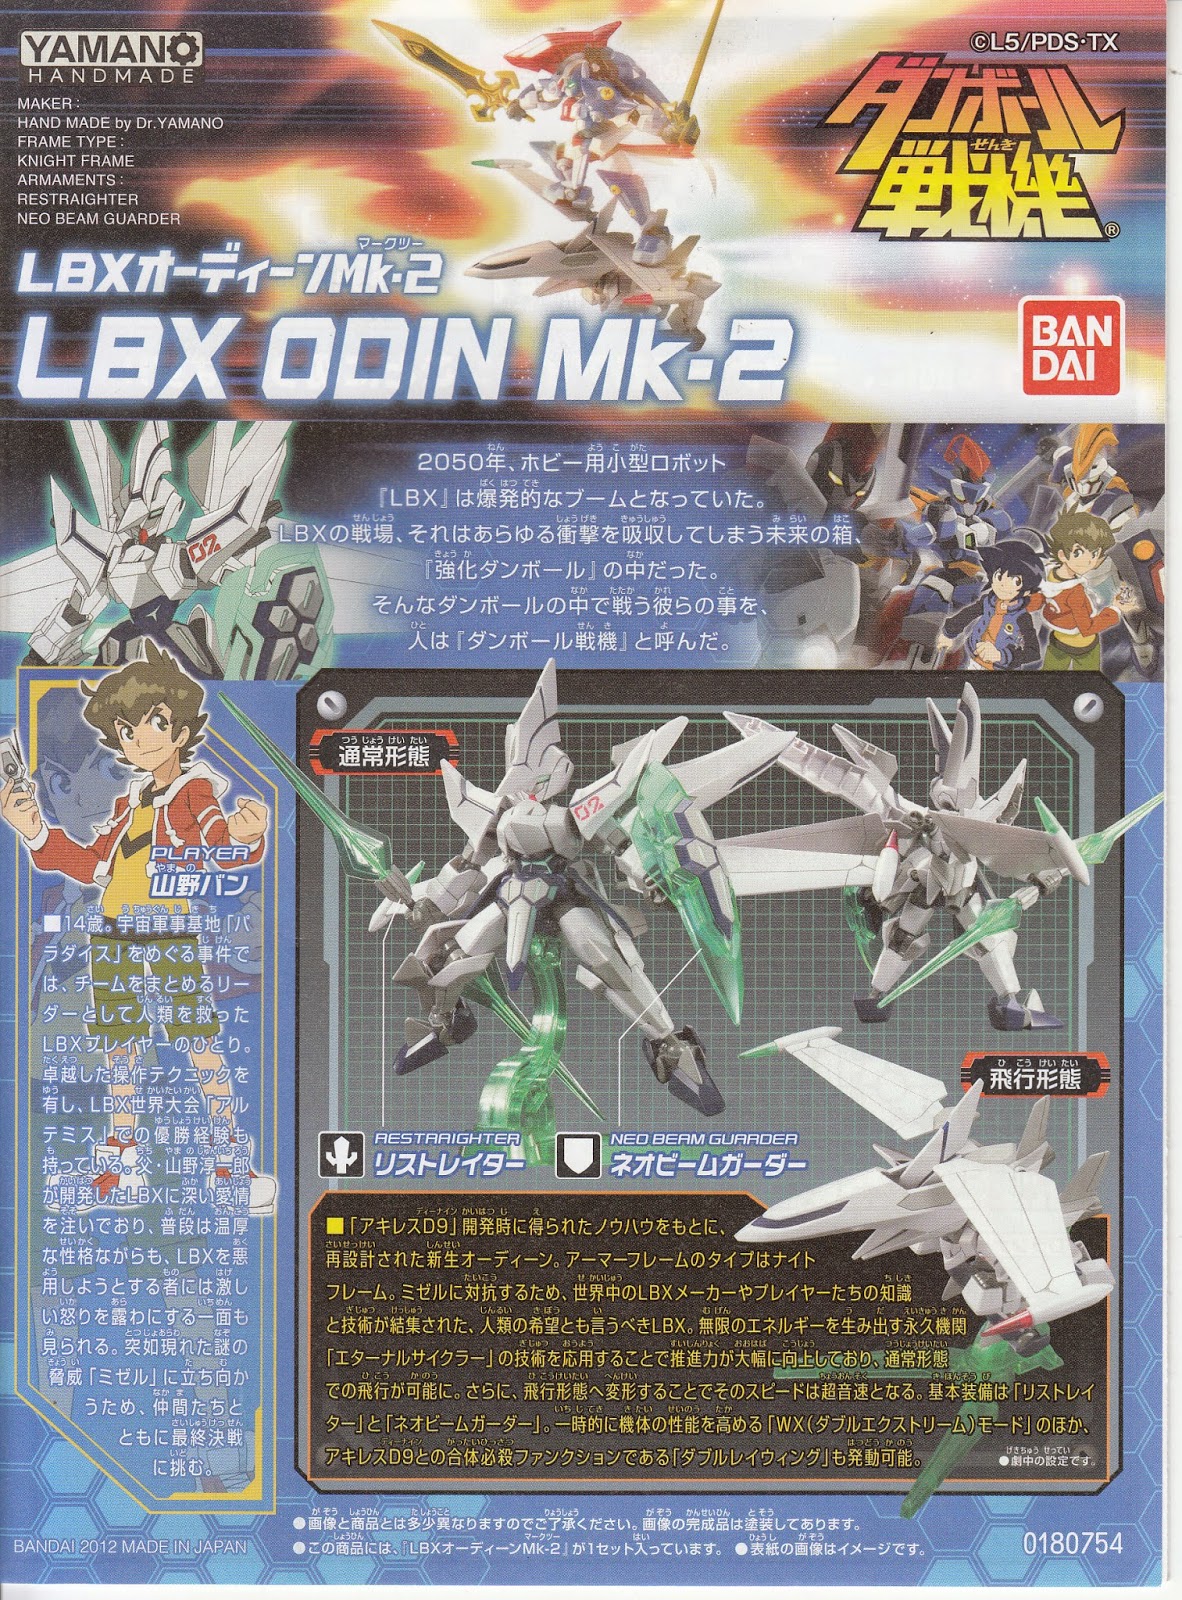 LBX - LBX Odin Mk2 